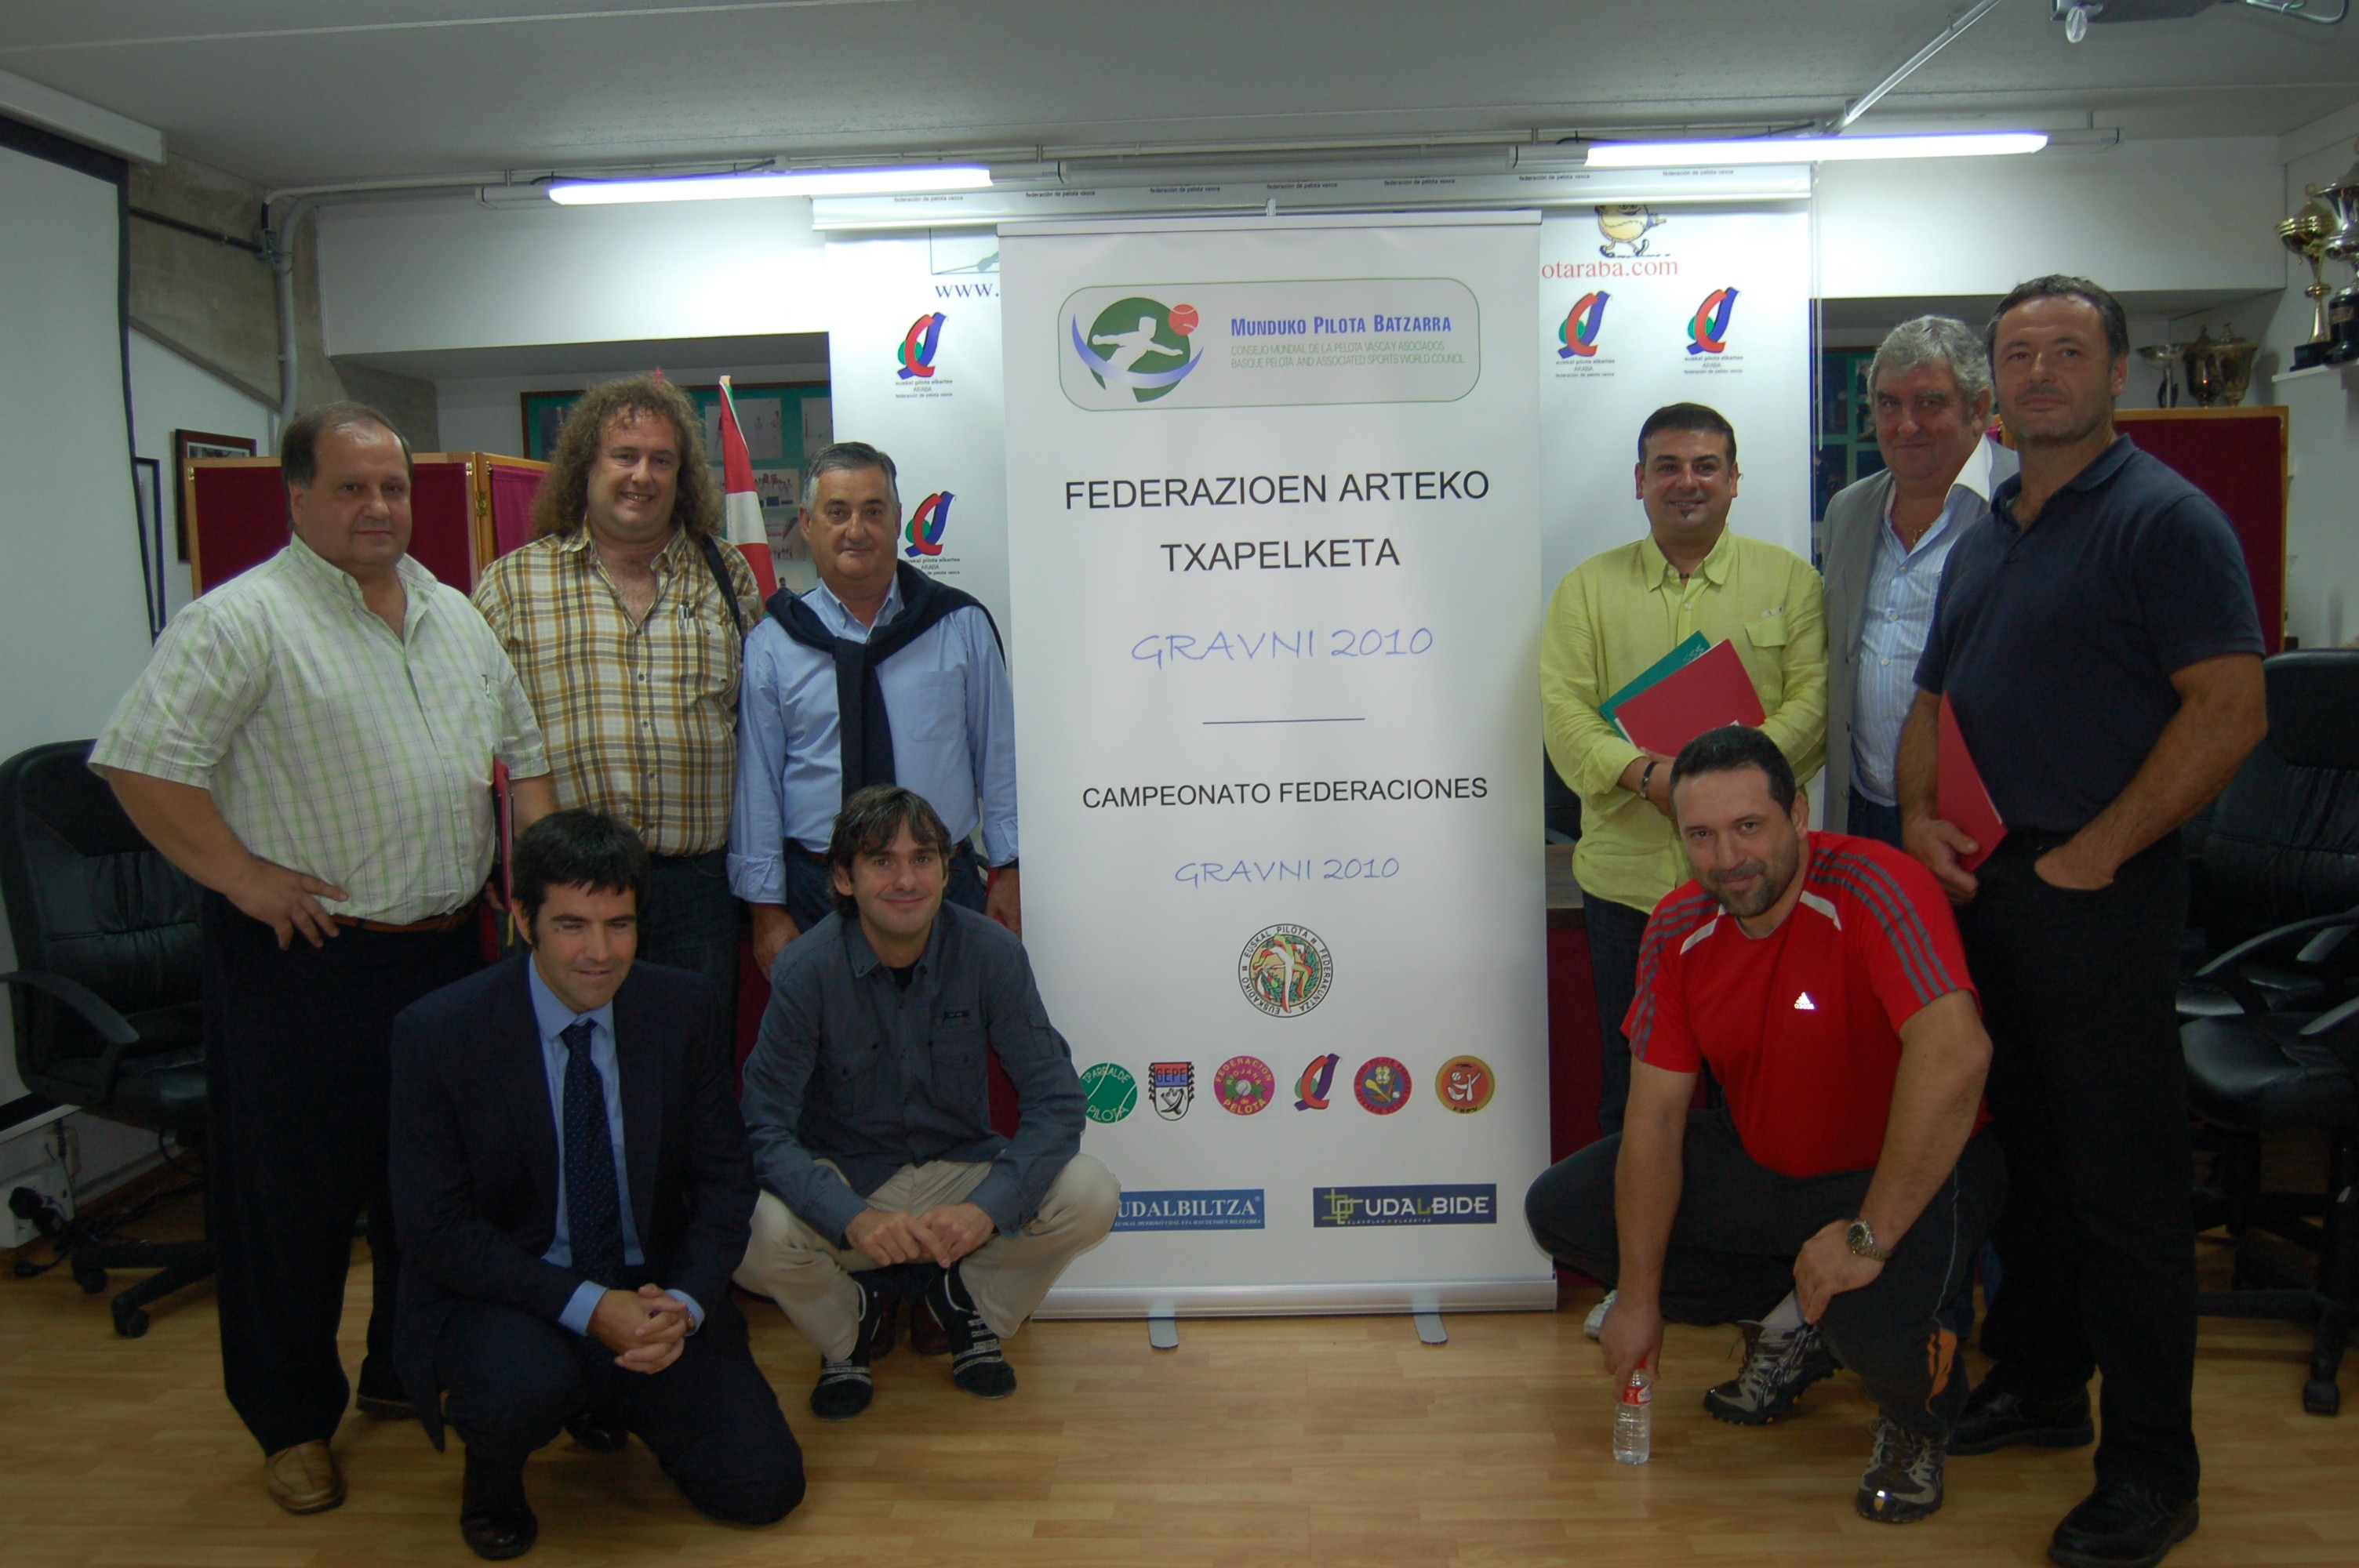 Presentación del Trofeo Udalbide ante los medios en Gasteiz (foto MPB)